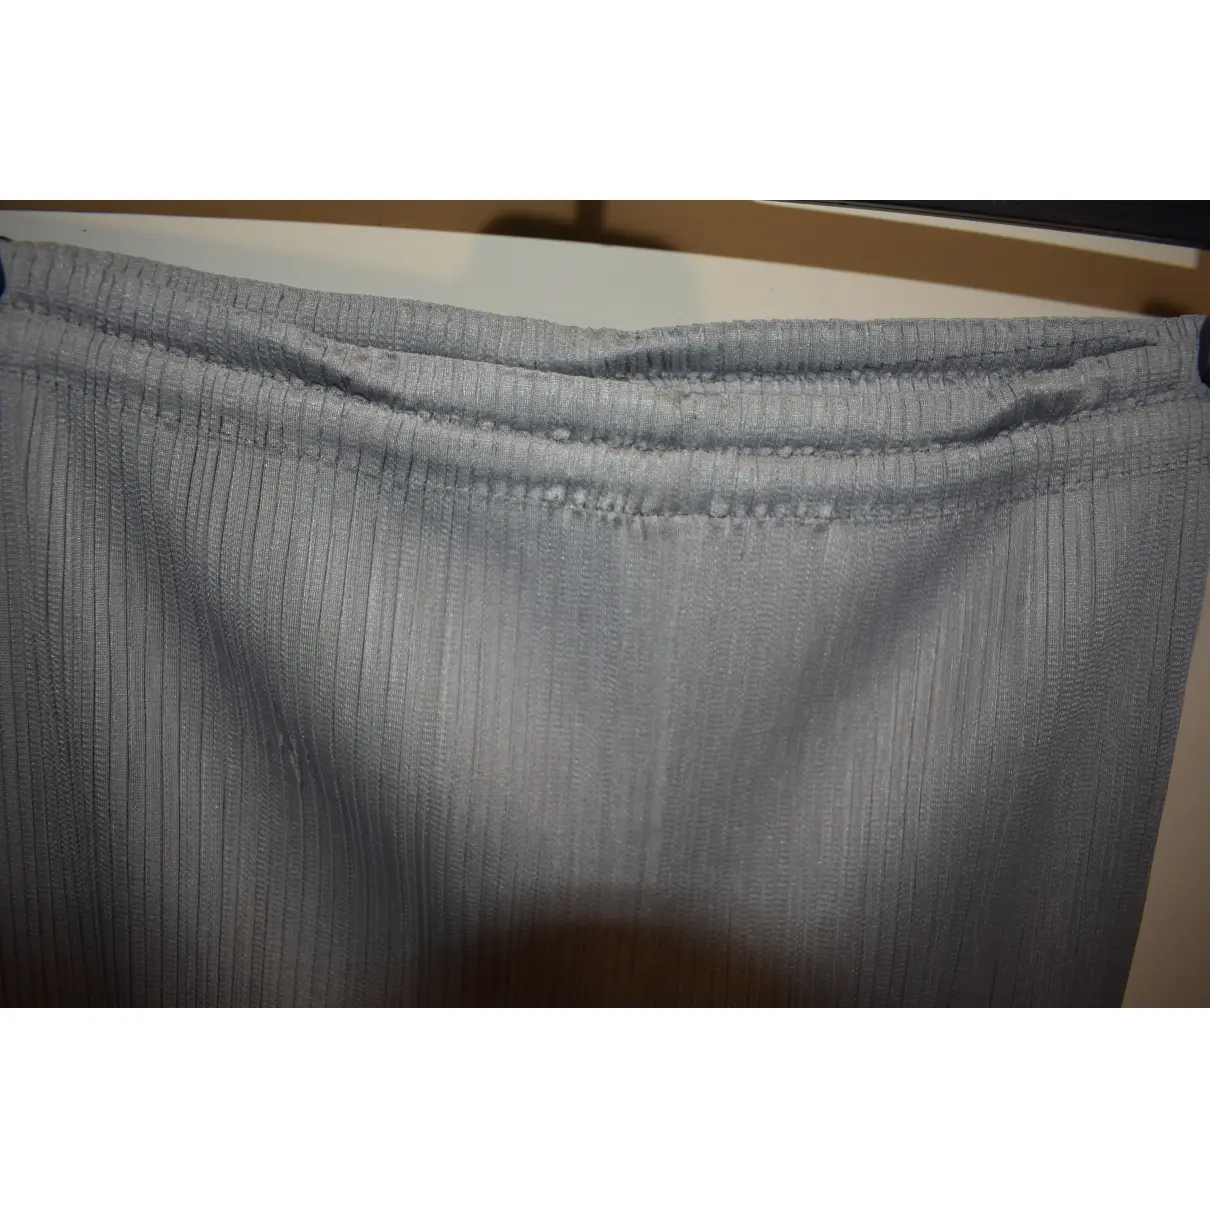 Grey Polyester Shorts Pleats Please - Vintage